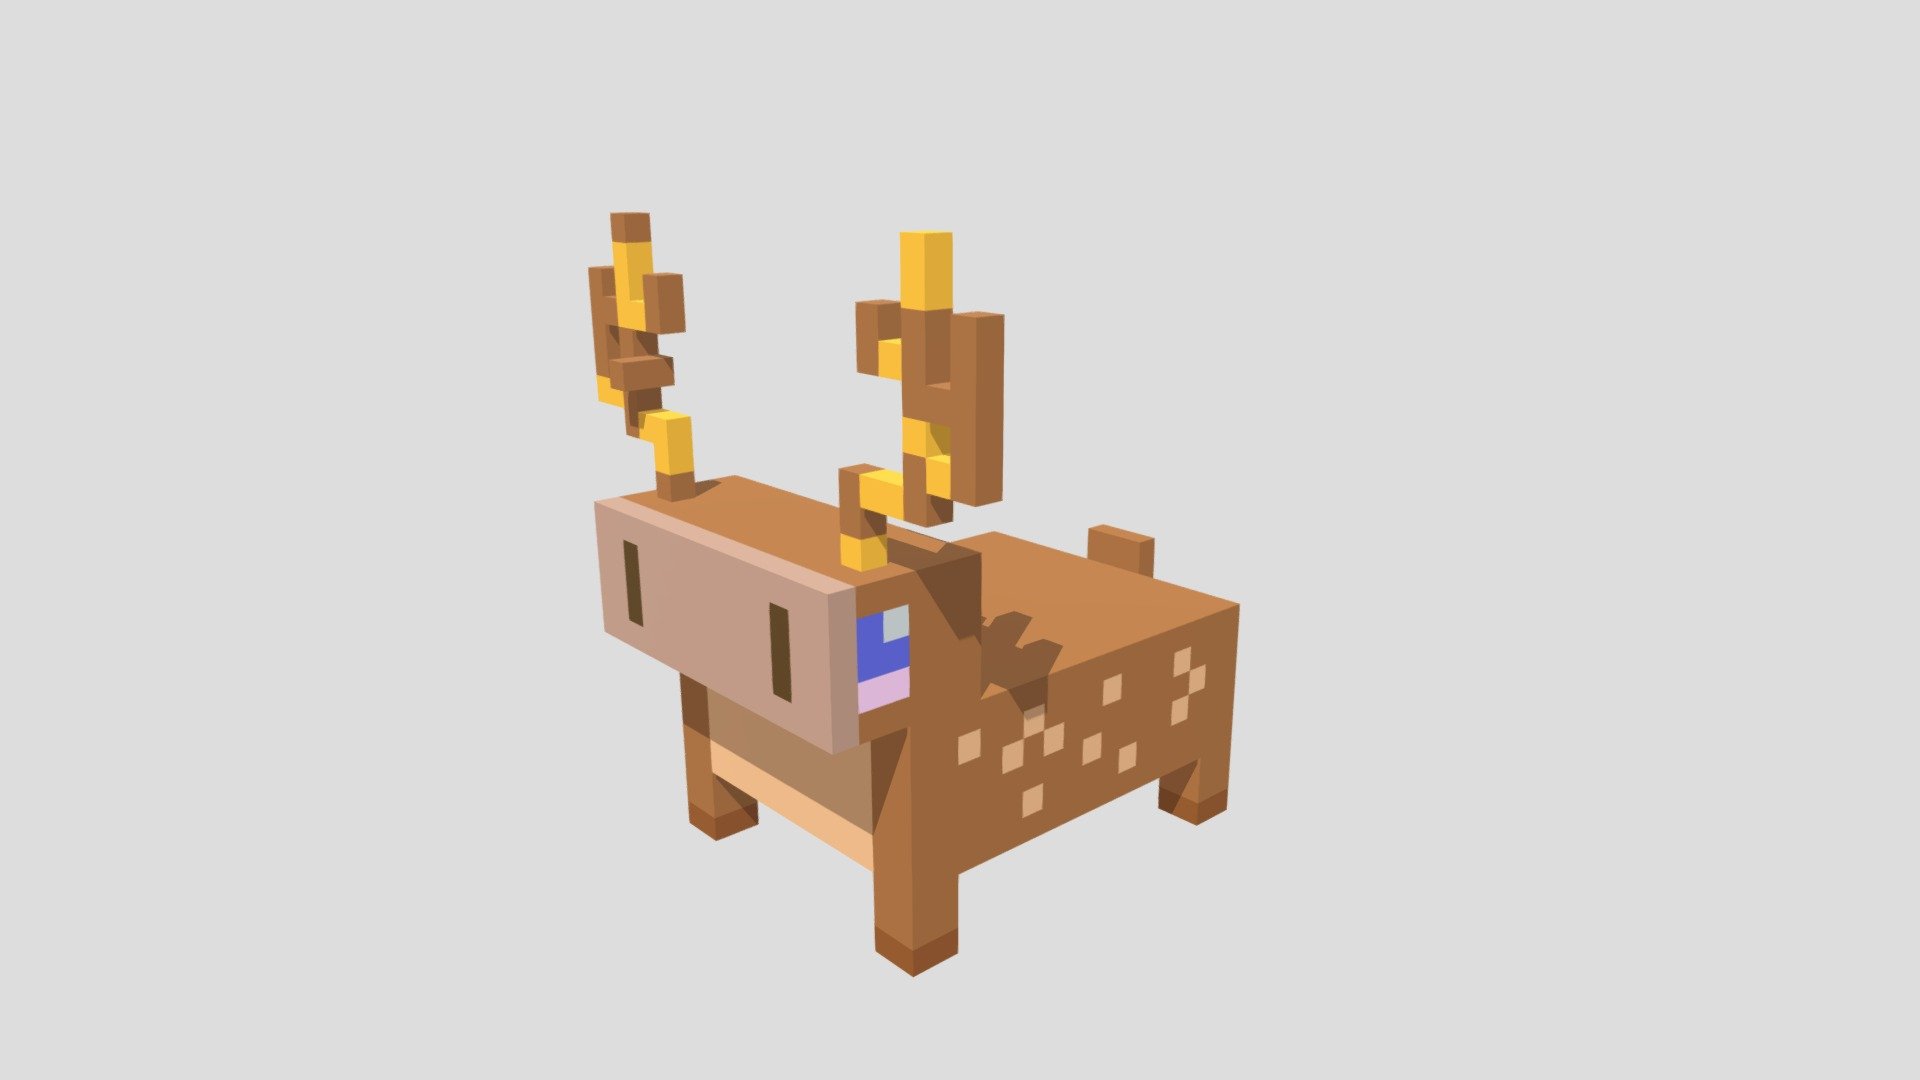 voxel art deer